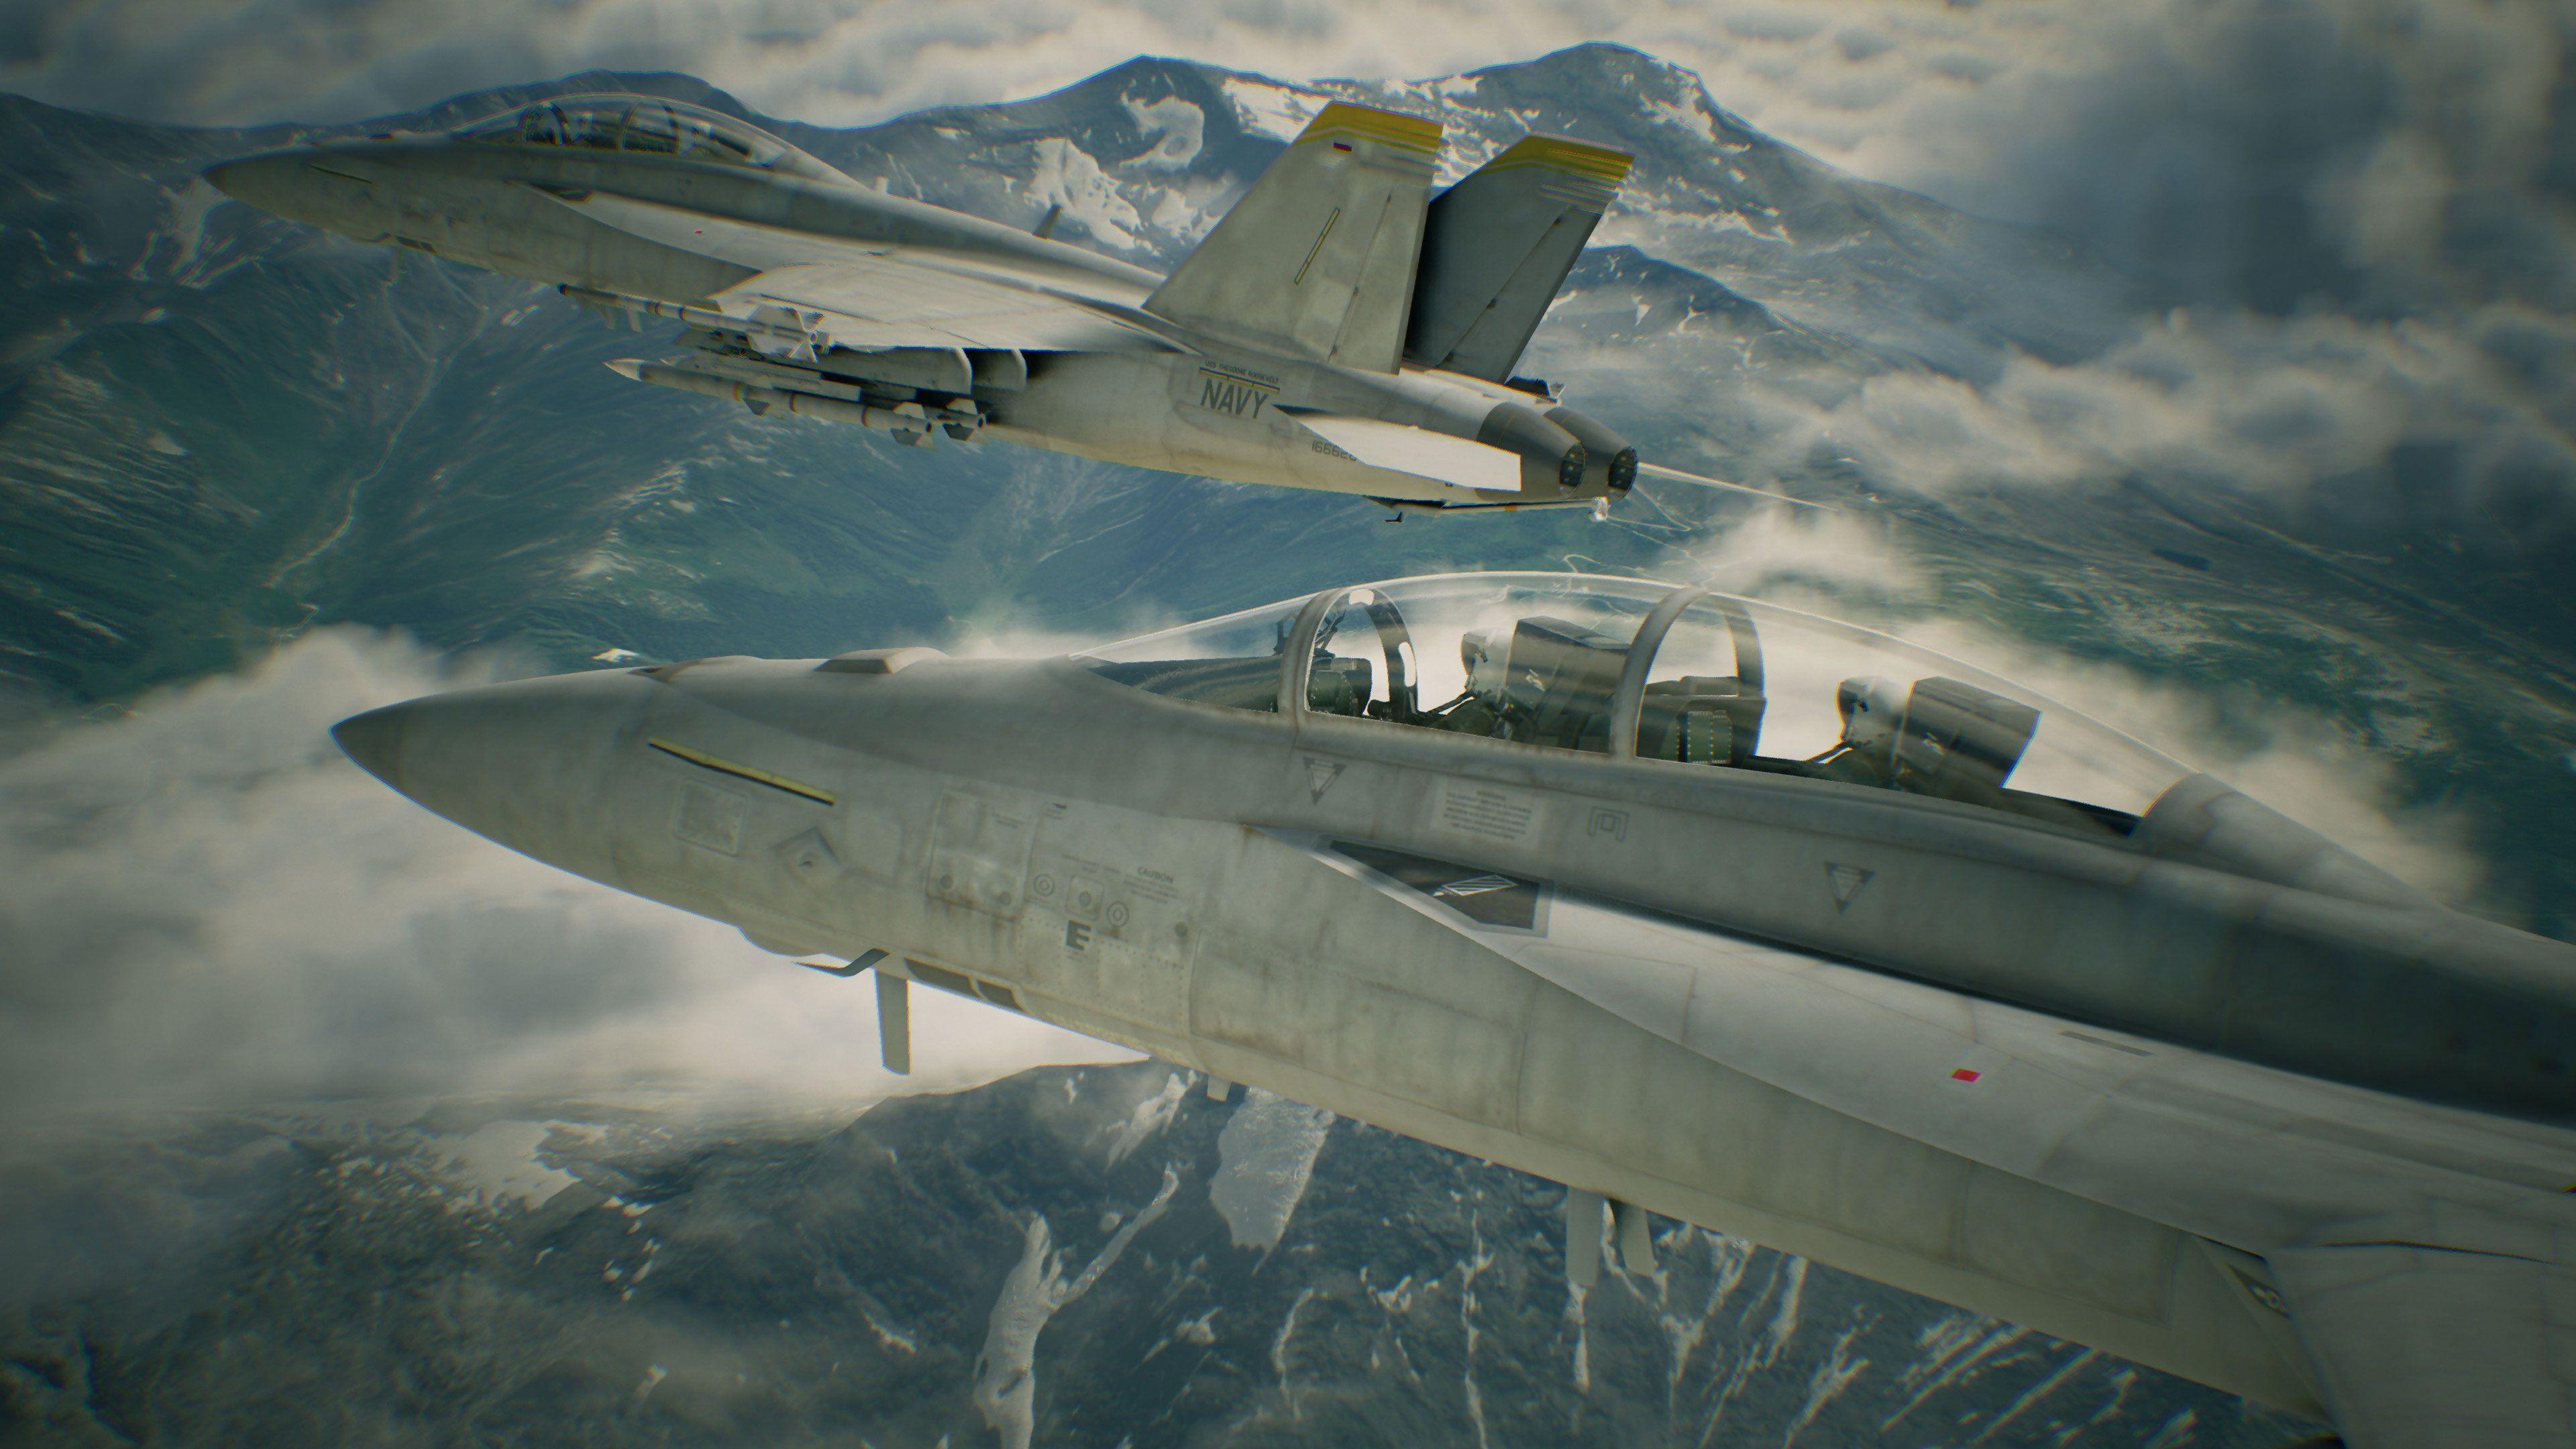 Ace Combat 7: Skies Unknown Wallpaper in Ultra HDK